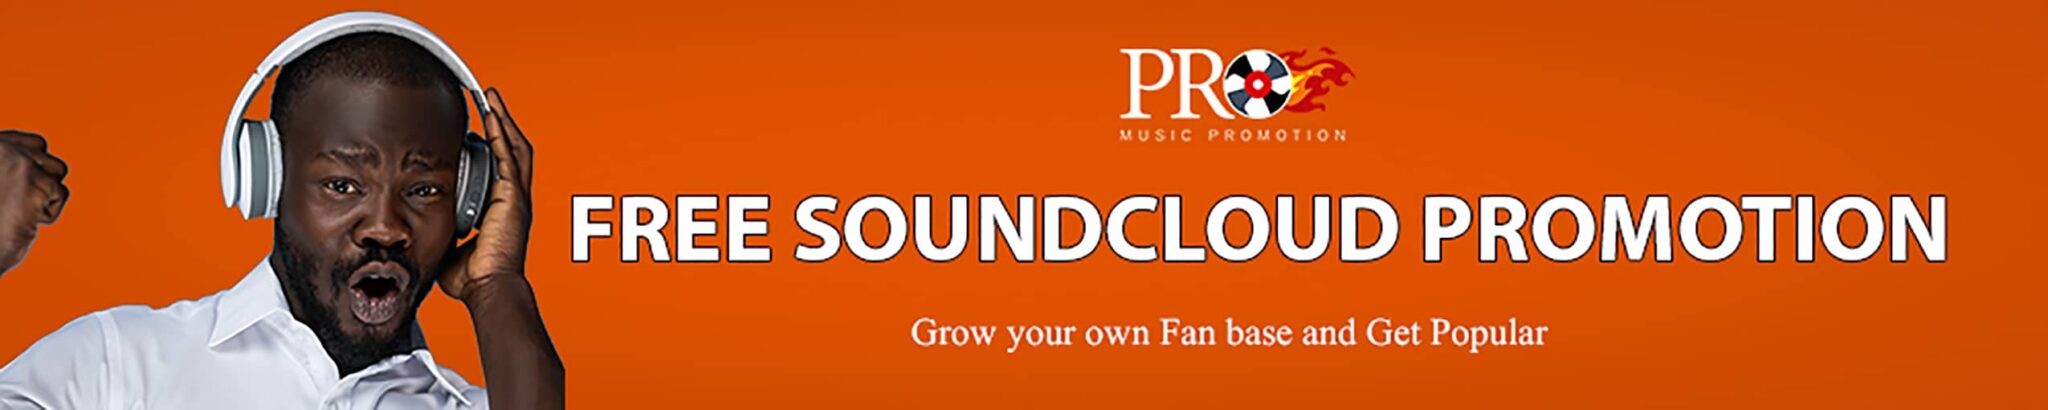 Free soundcloud promotion